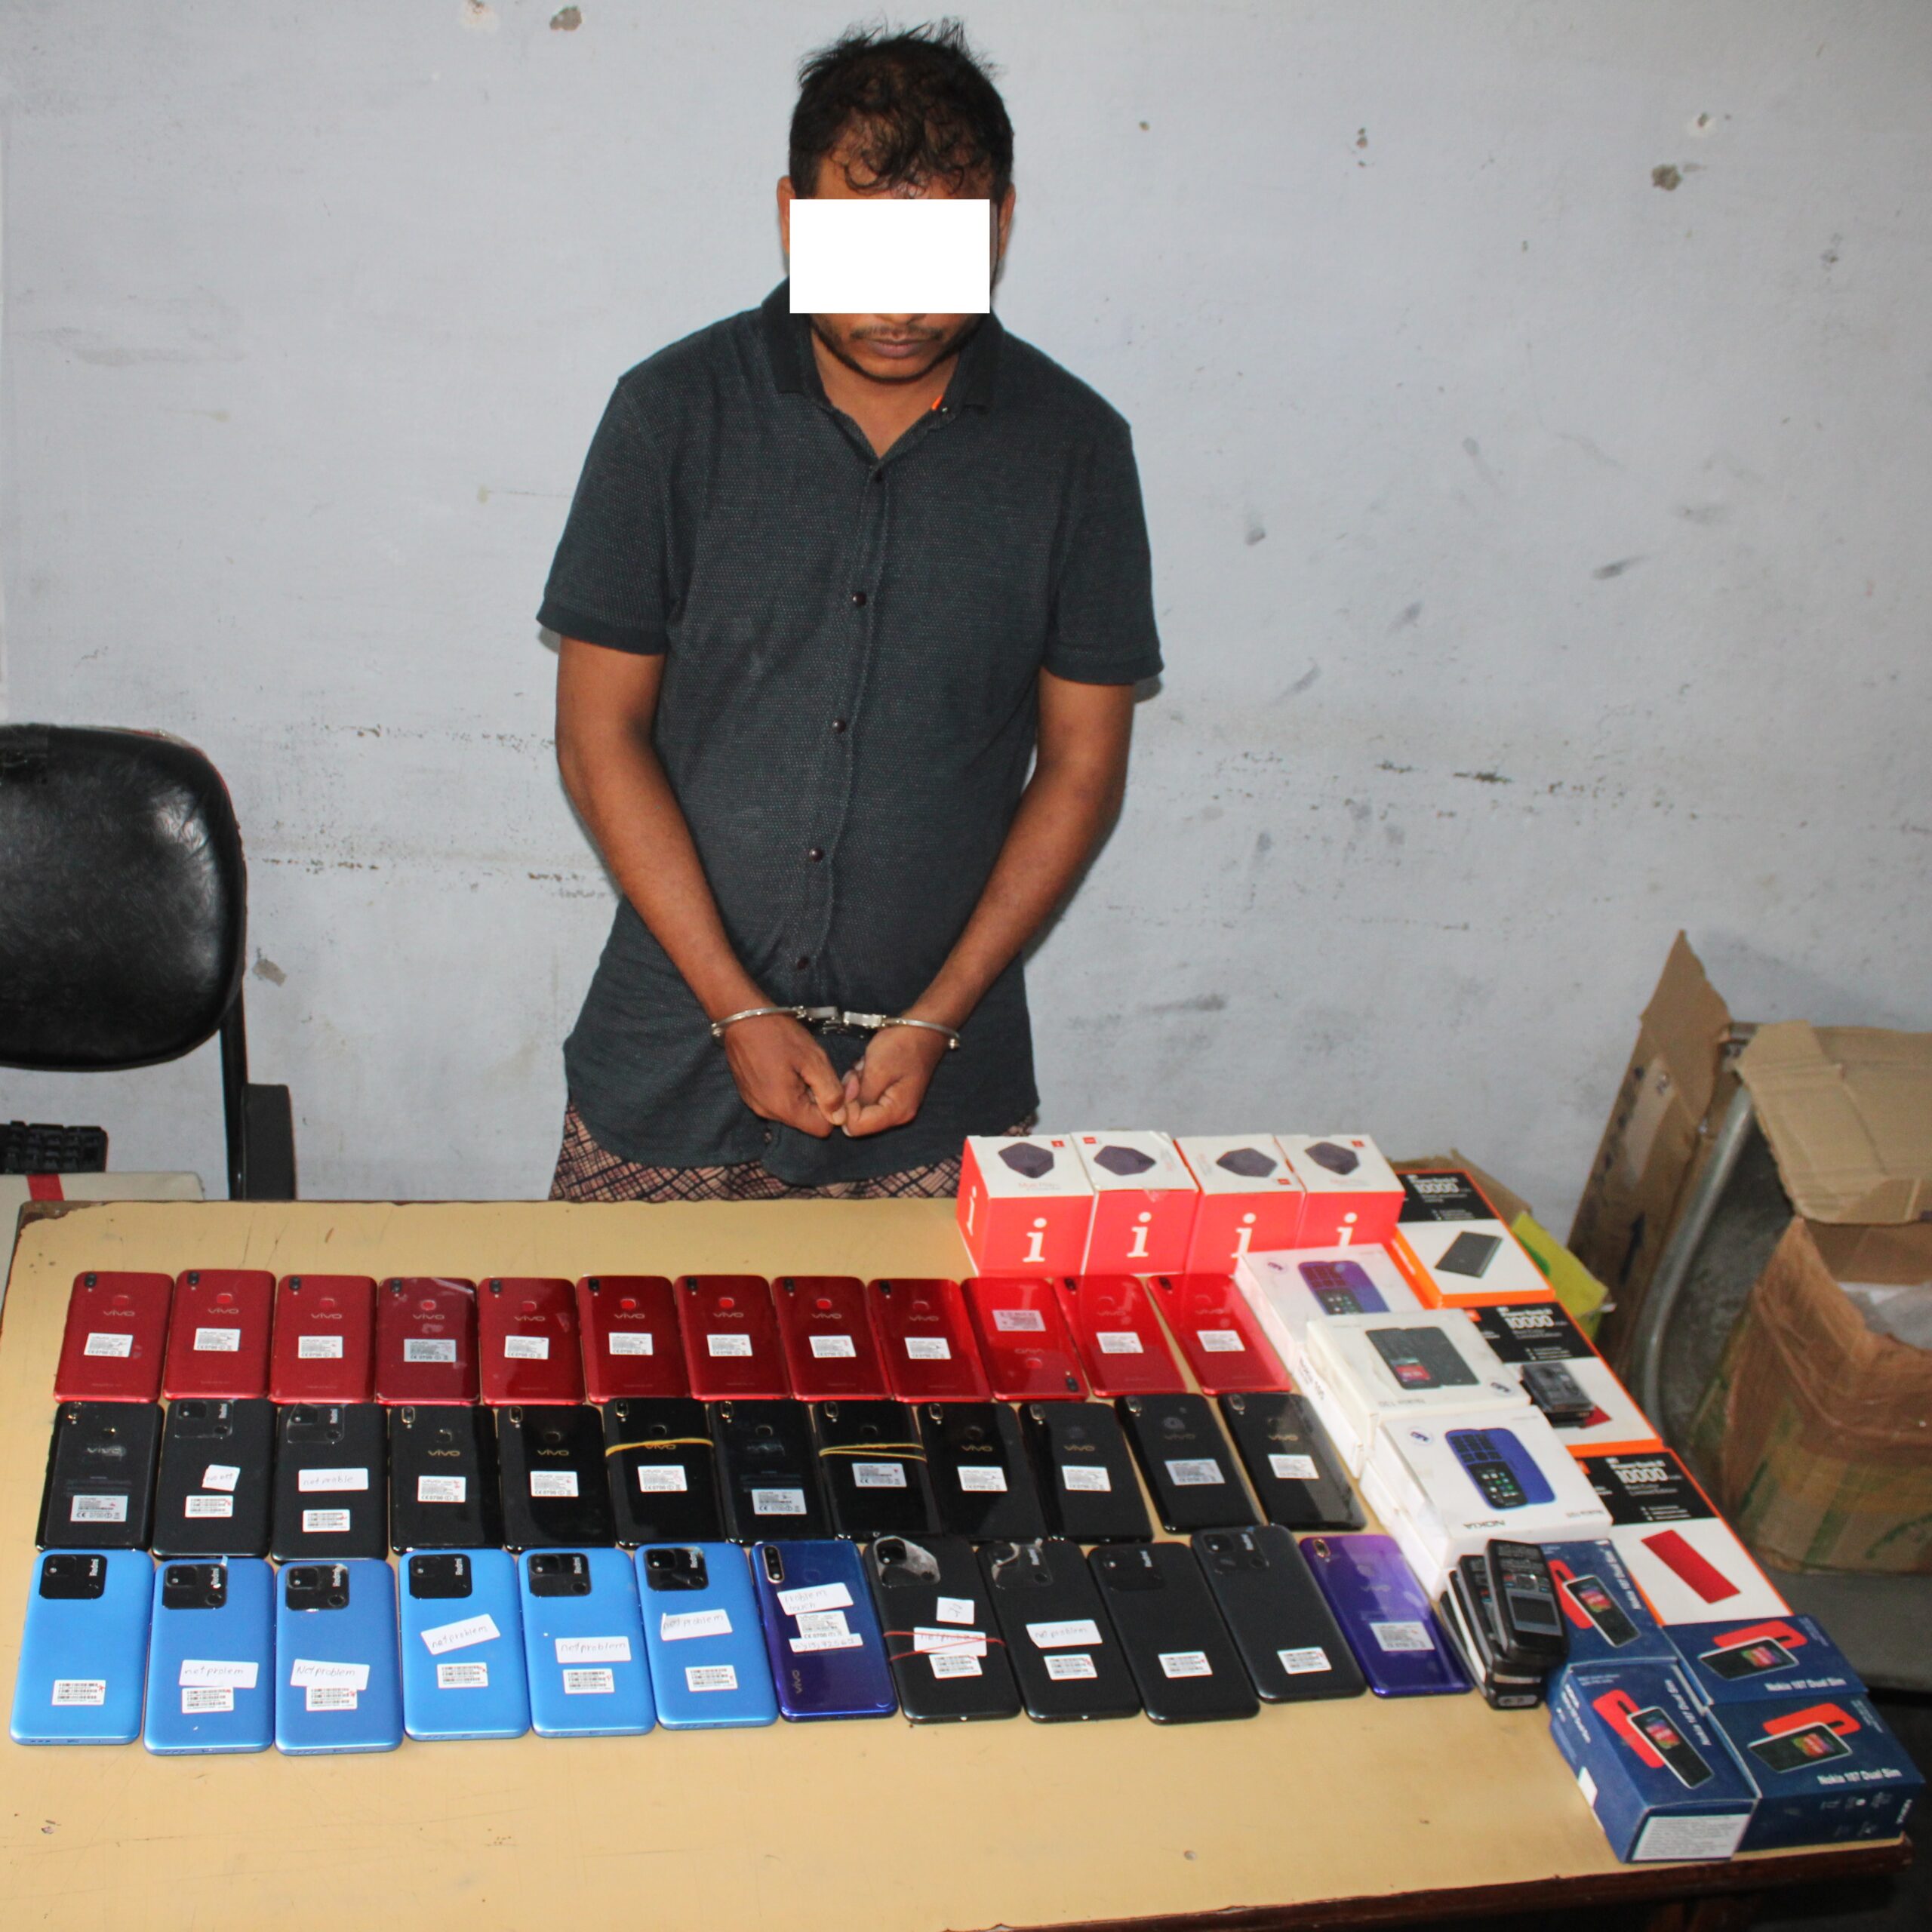 भैरहवां में सोनौली का मोबाइल विक्रेता गिरफ्तार,भारी मात्रा में मोबाइल फोन,पावर बैंक बरामद